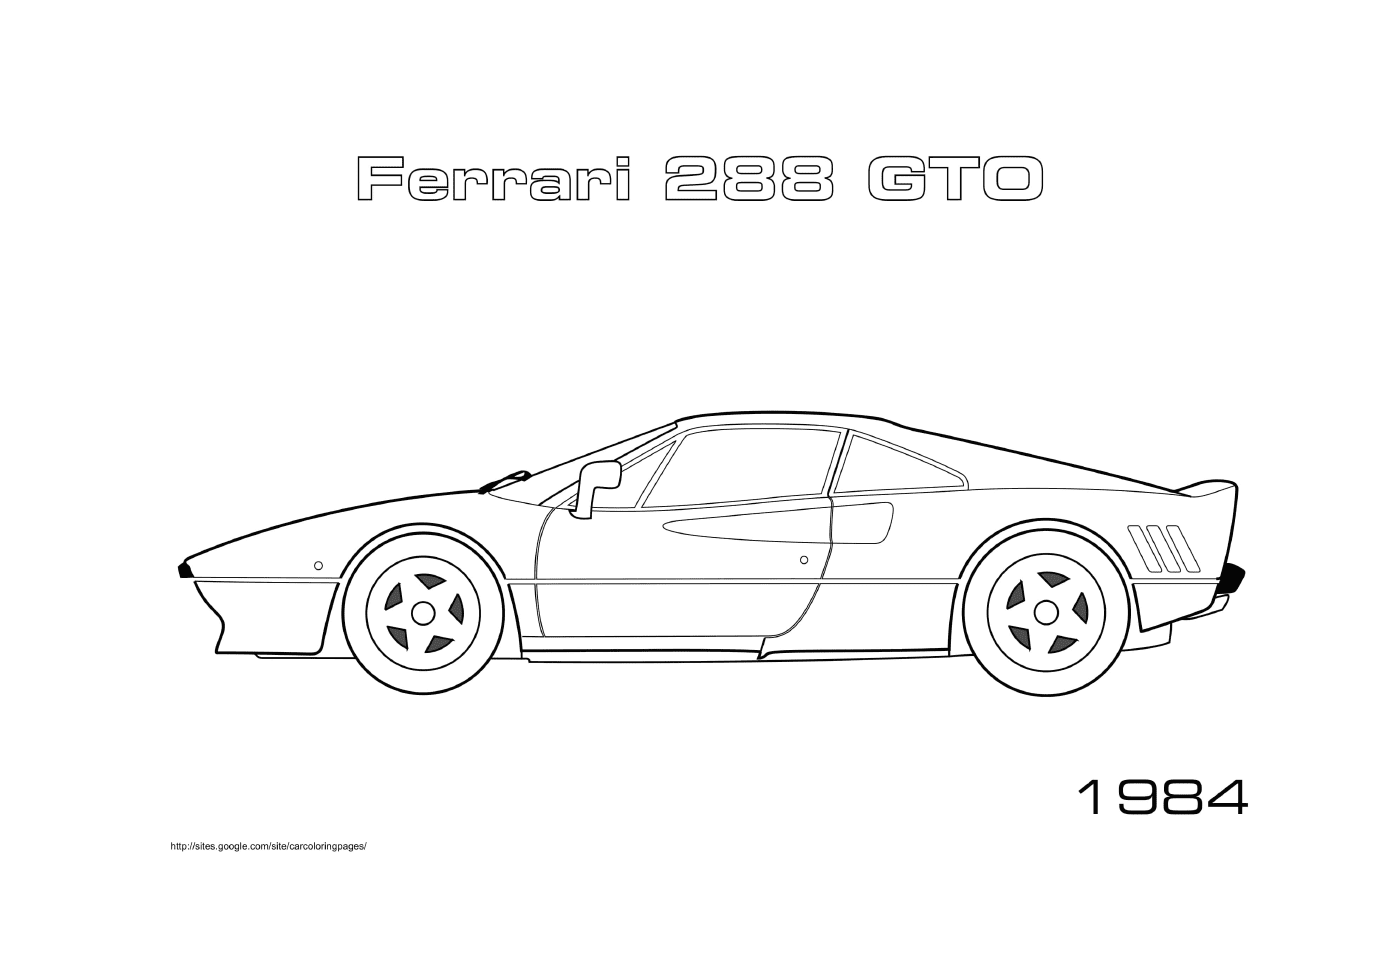  Ferrari 288 GTO 1984, auto sportive 